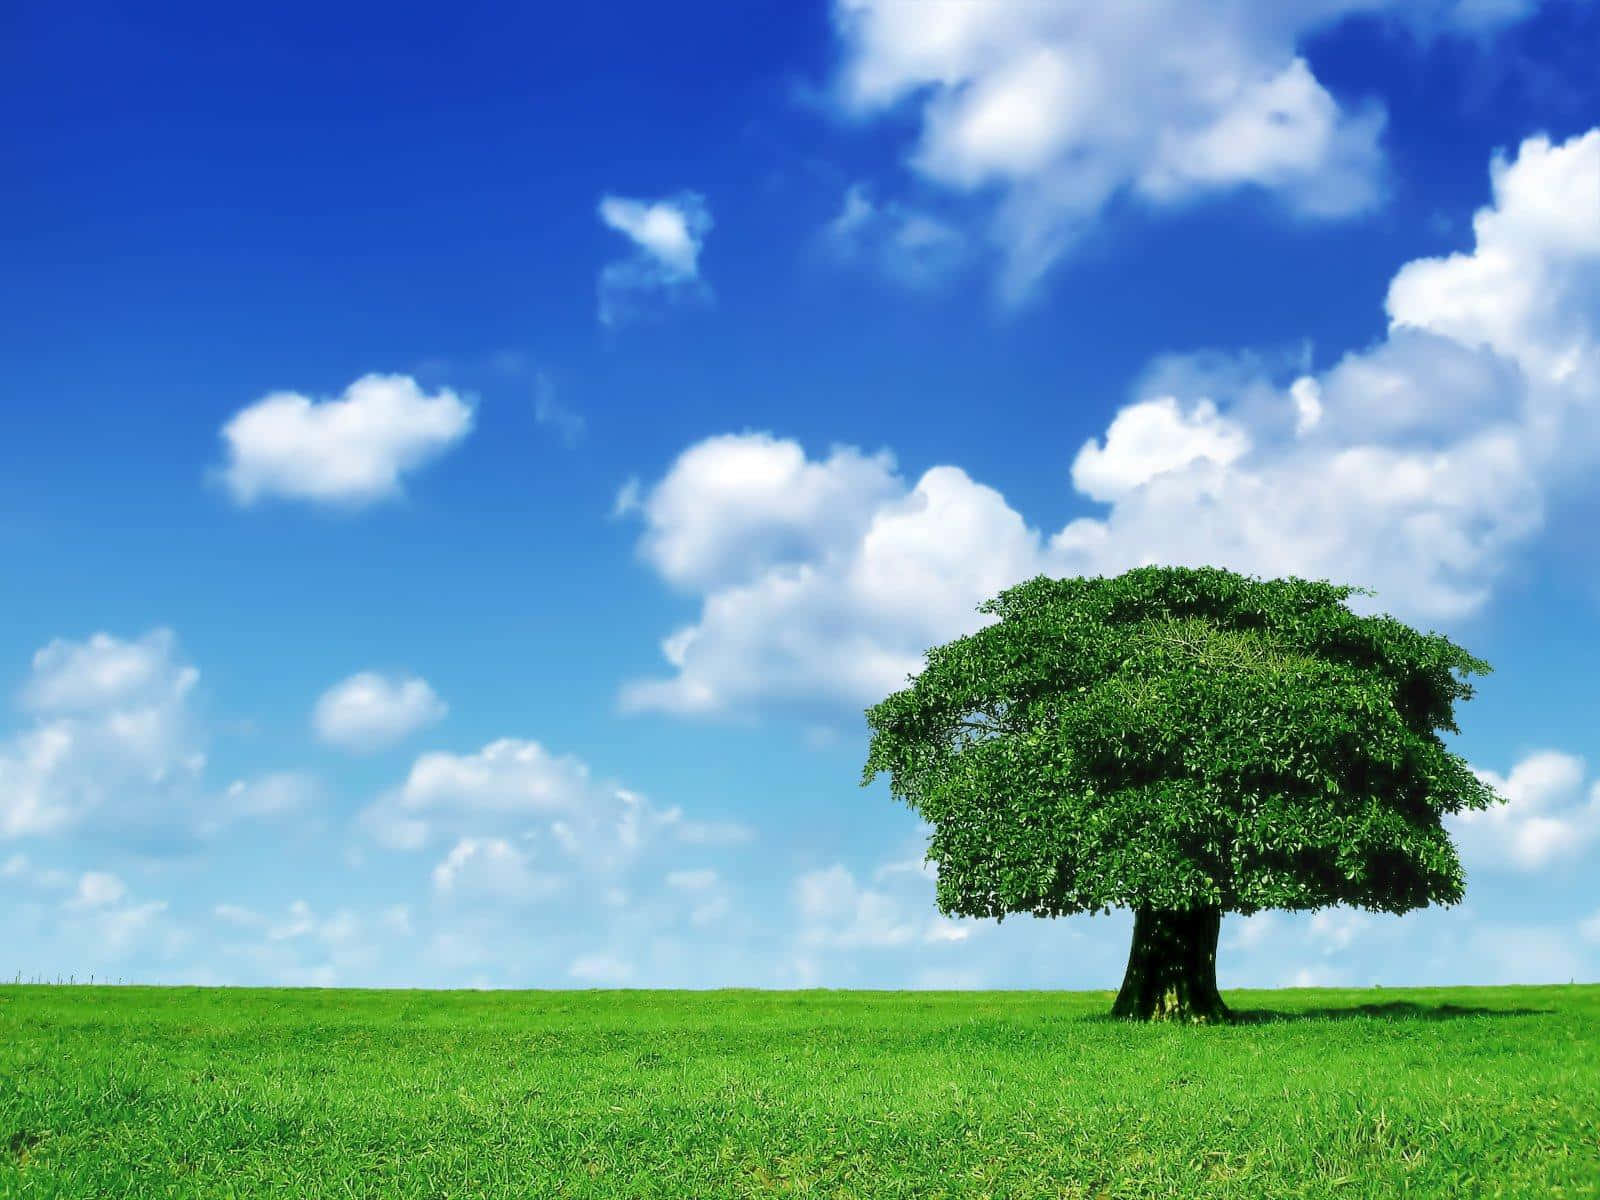 Einbild Von Ruhe Und Natur - Ein Grüner Baum In Schwarz Und Weiß